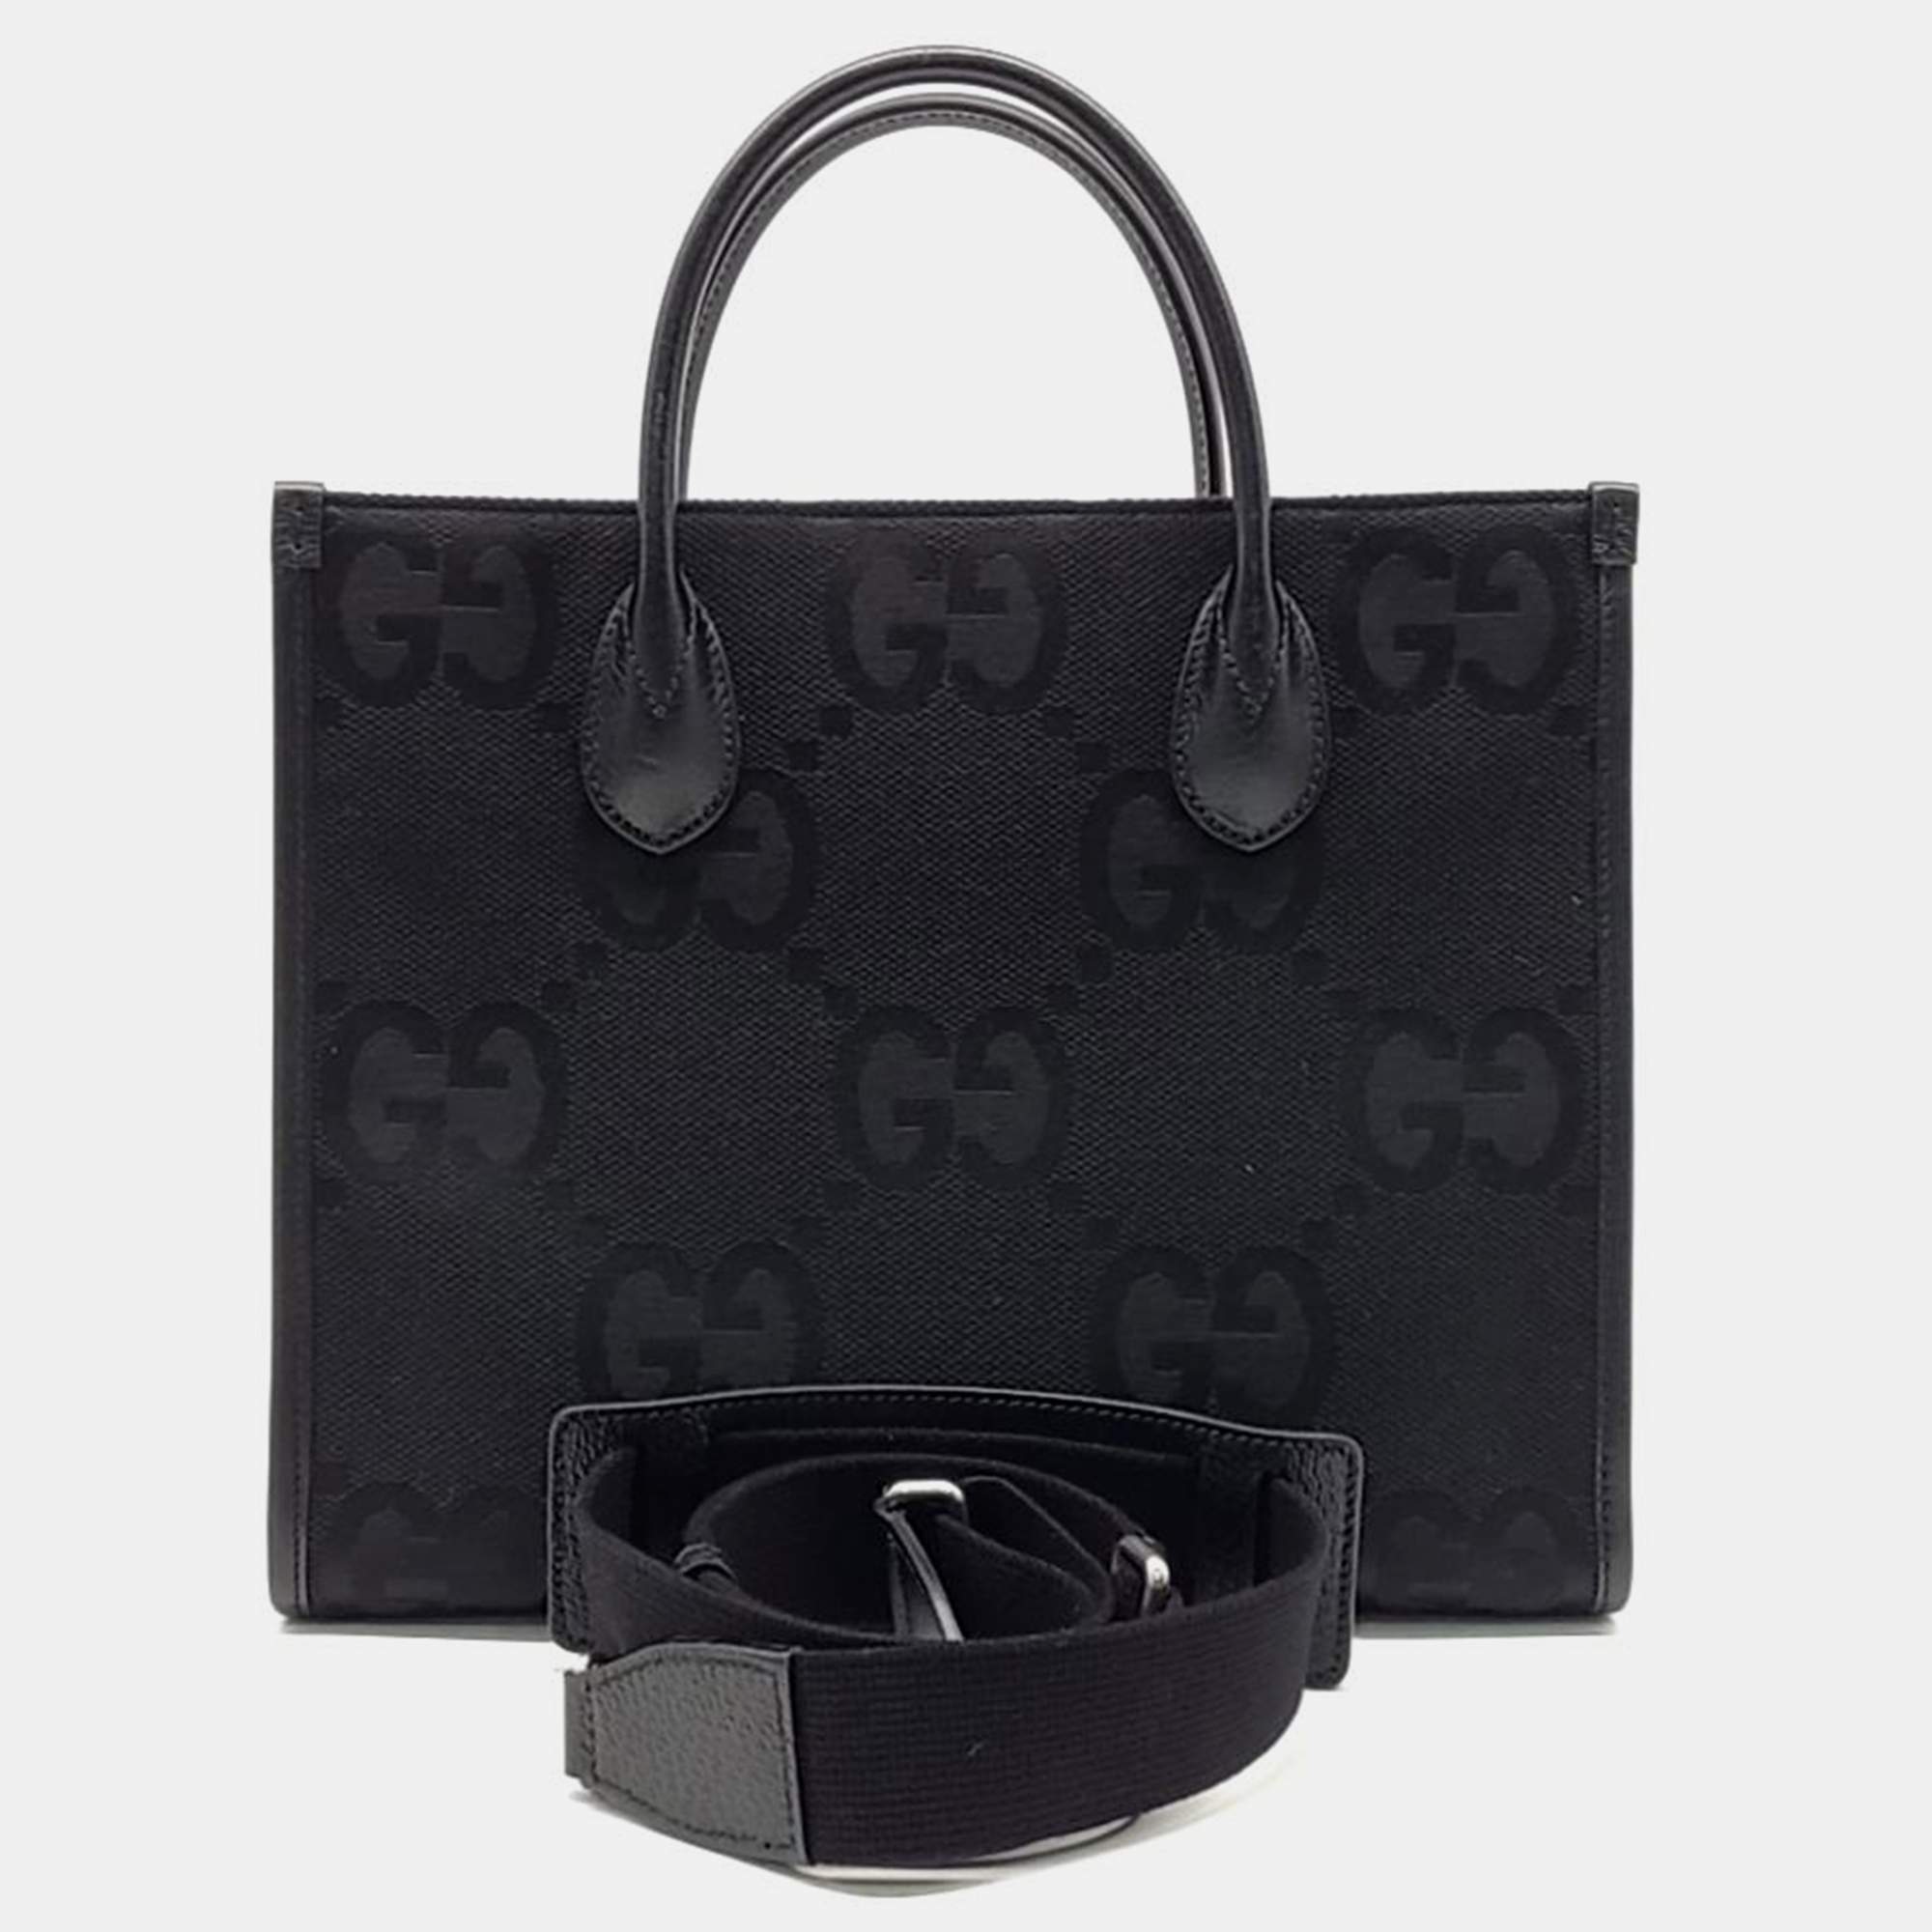 Gucci 100 small tote/shoulder bag (680956)